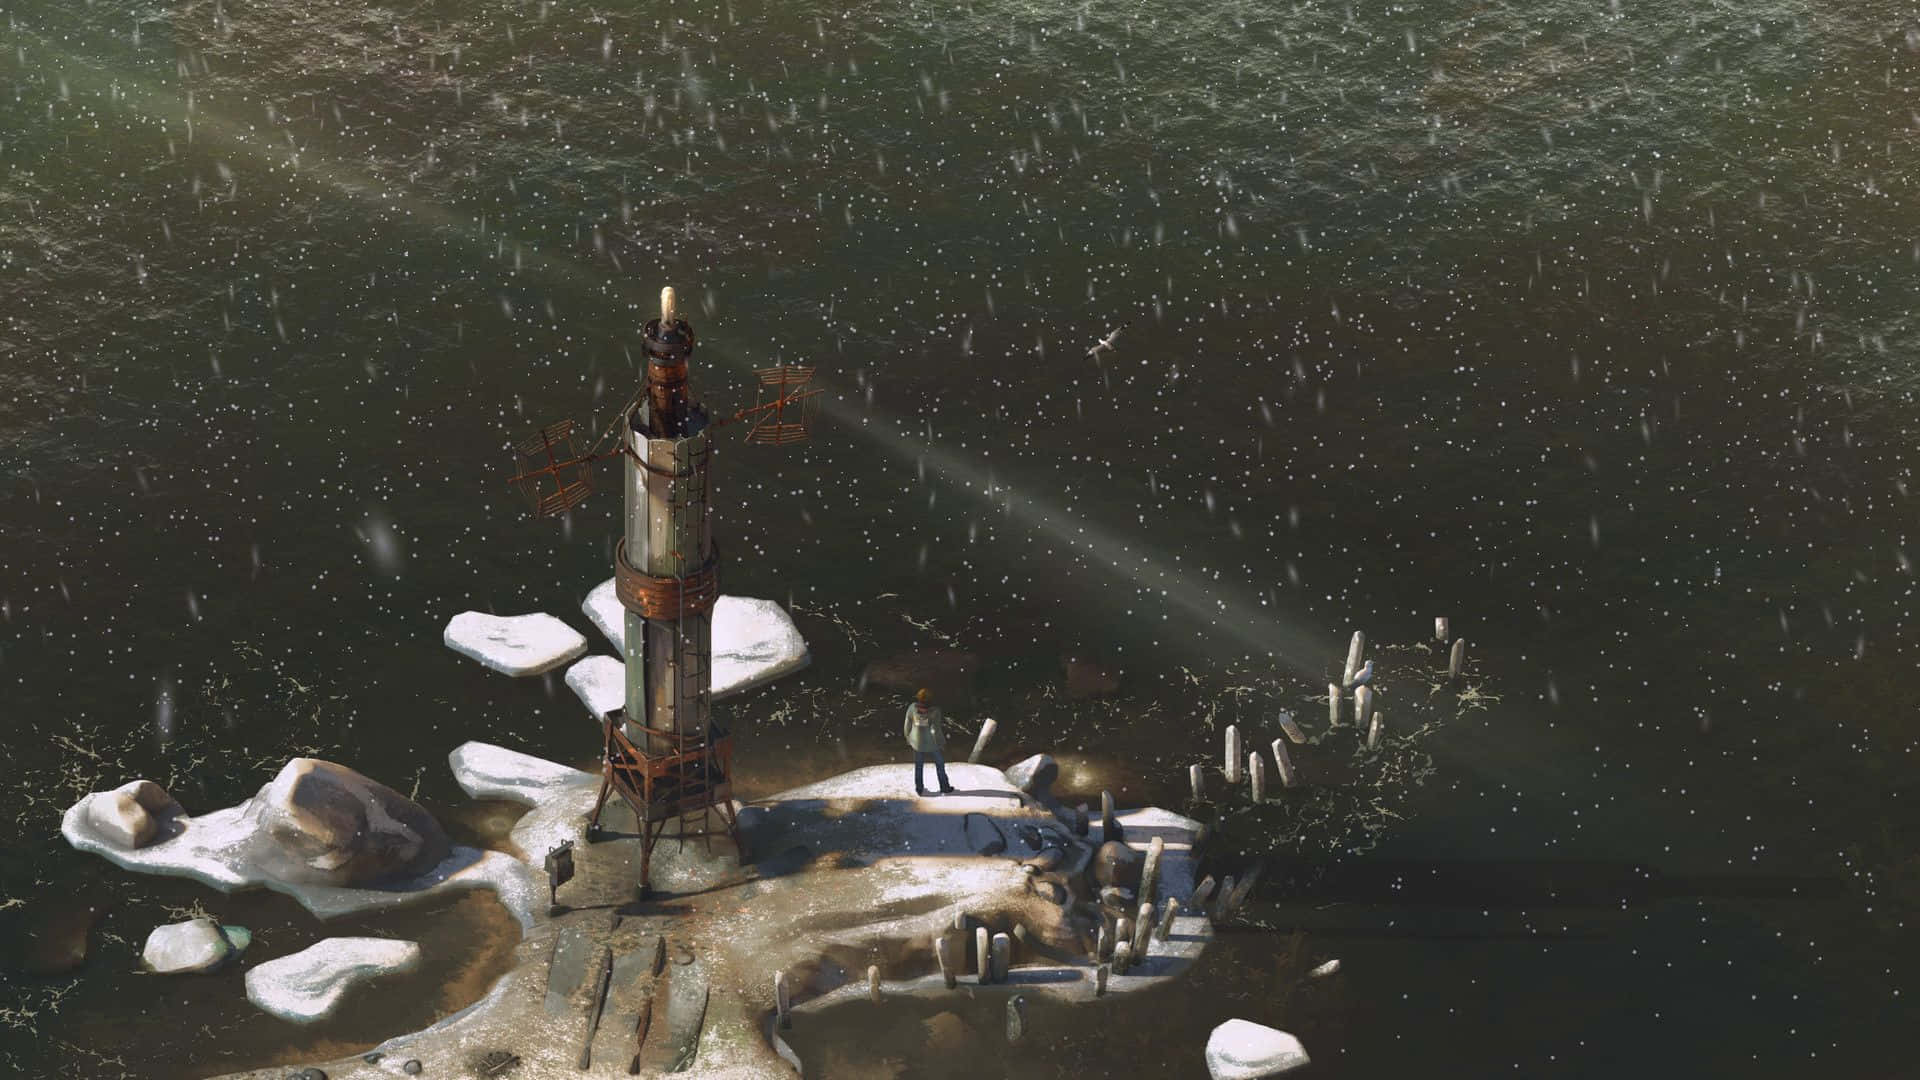 Disco Elysium Lighthousein Snow Wallpaper